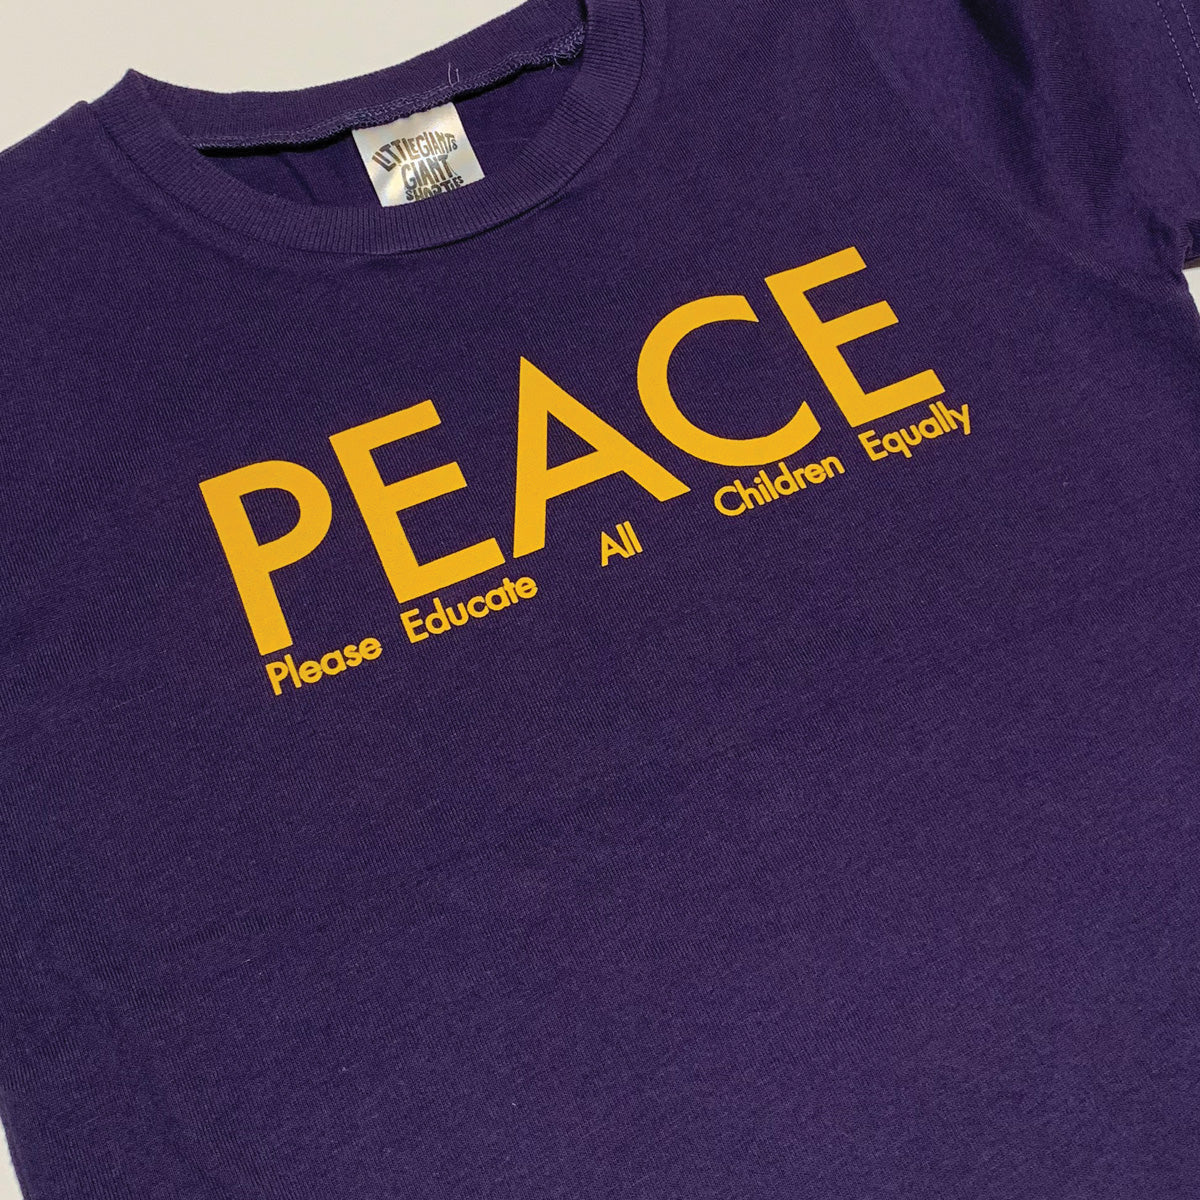 P.E.A.C.E T-Shirt (Grape)